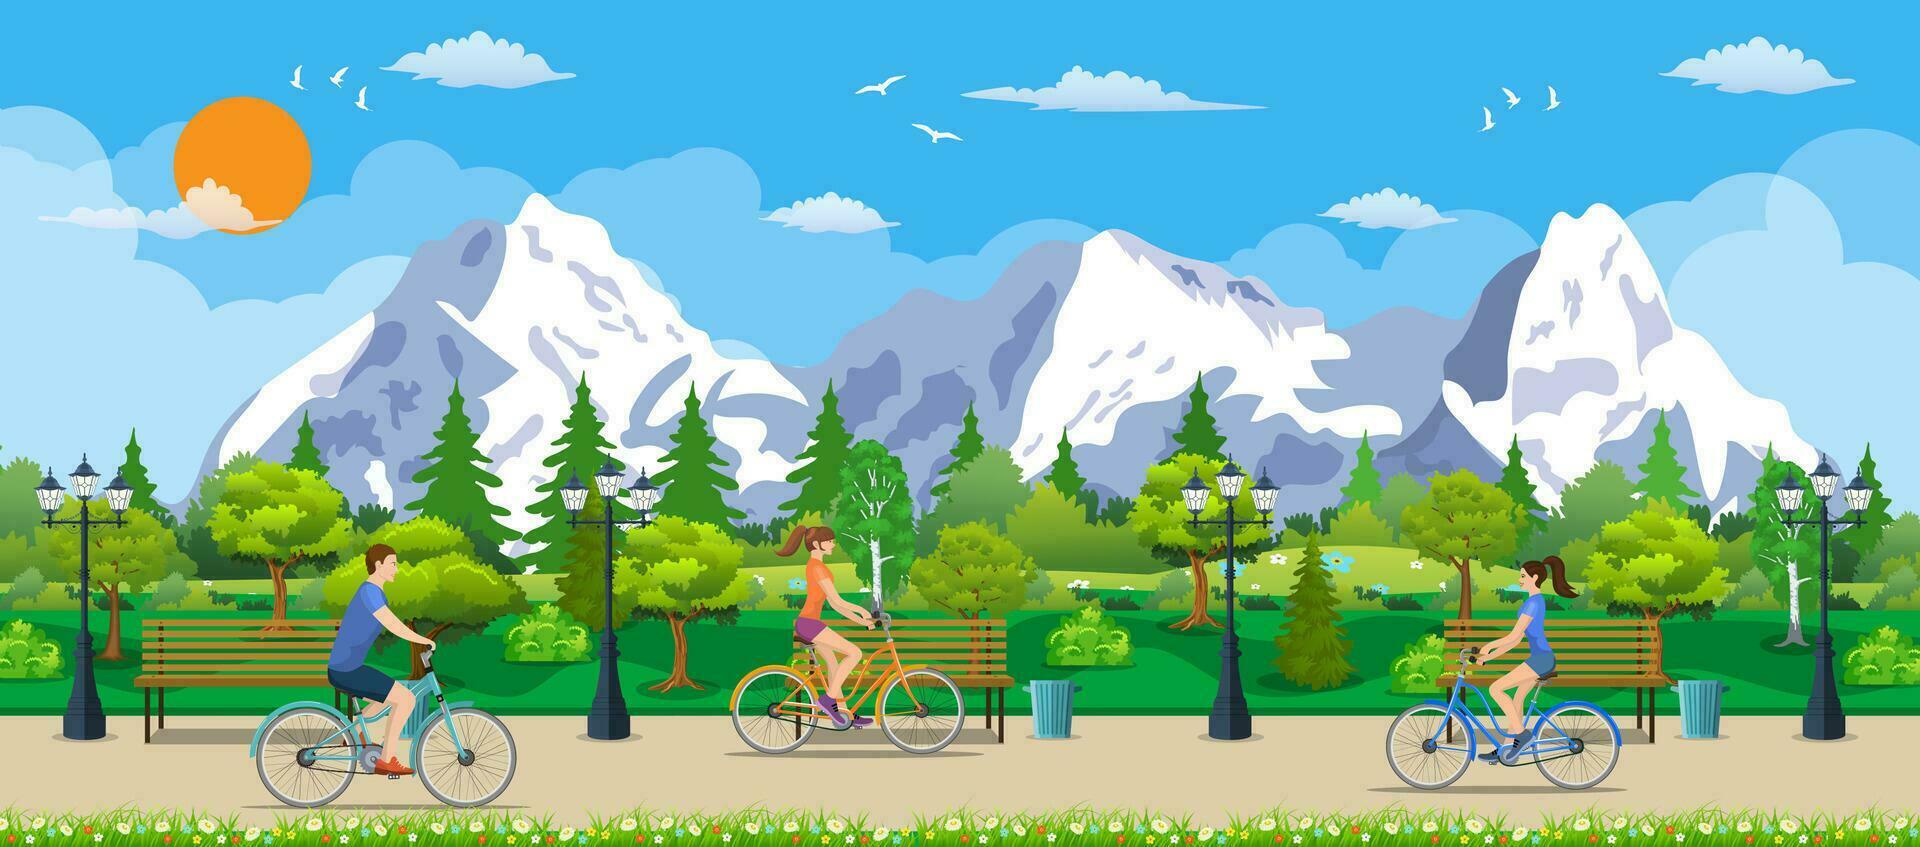 equitazione biciclette nel pubblico parco, vettore